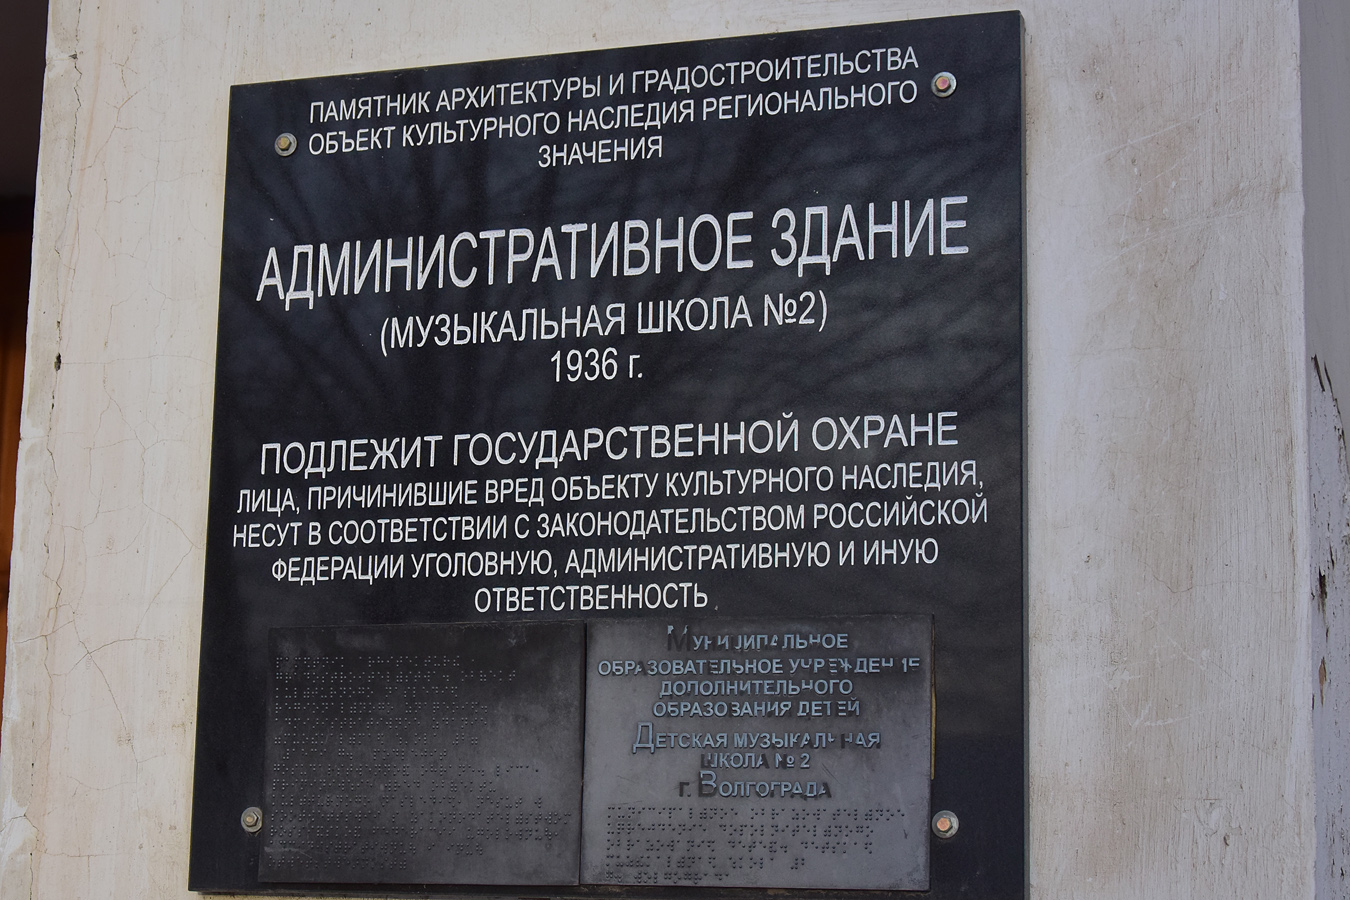 Volgograd, Проспект имени Ленина, 215. Volgograd — Memorial plaques